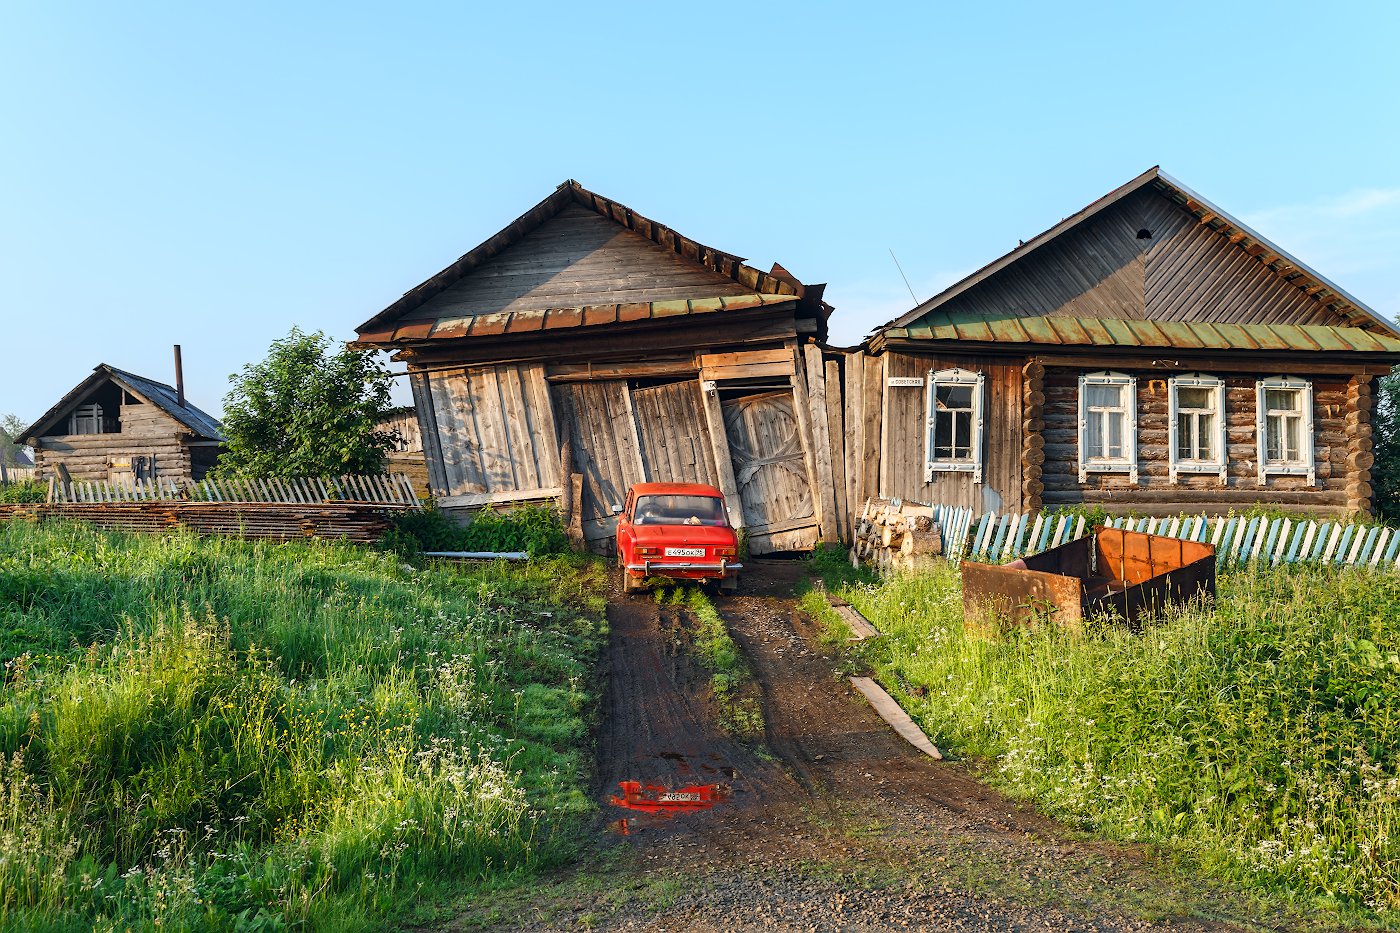 Дом с гаражом и баней на улице Советская. Поселок Висим. Свердловская область.